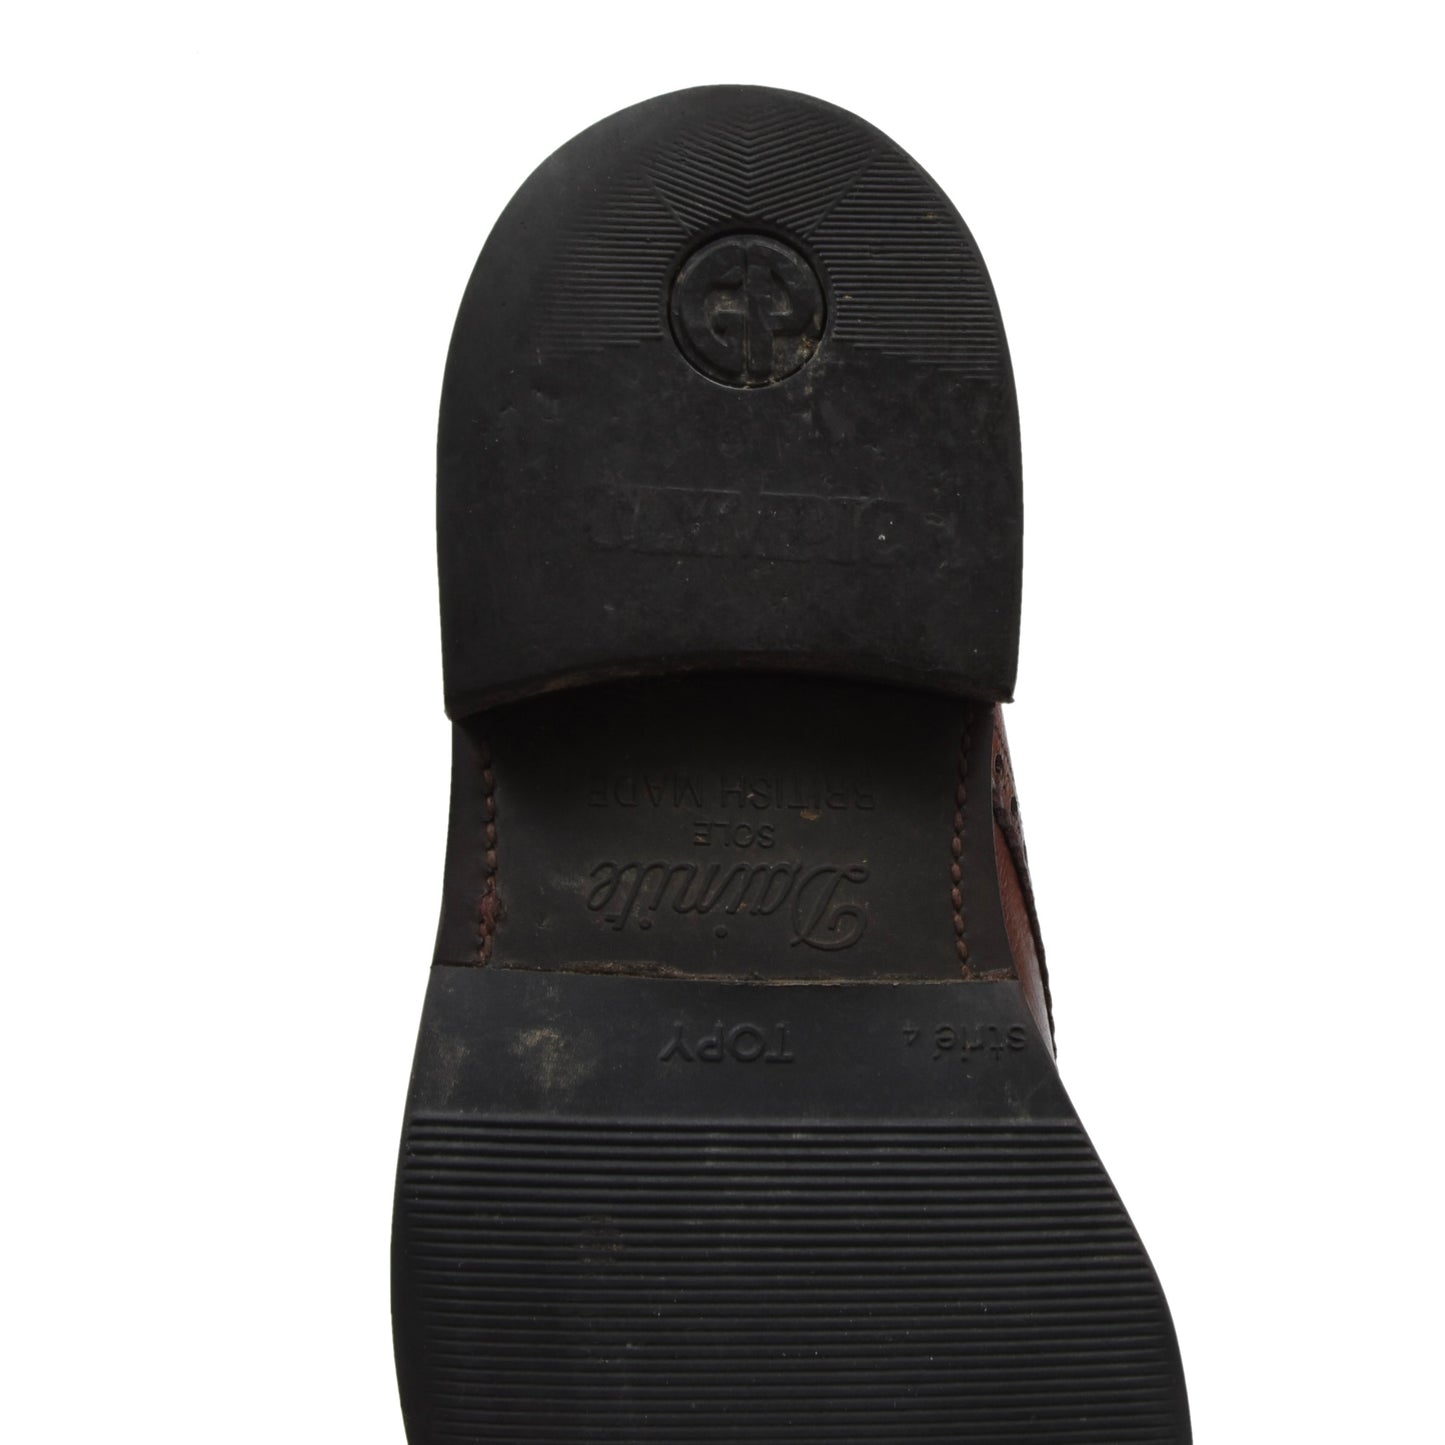 Loake 1880 Schuhe Leder Größe 7 - Burgunderrot